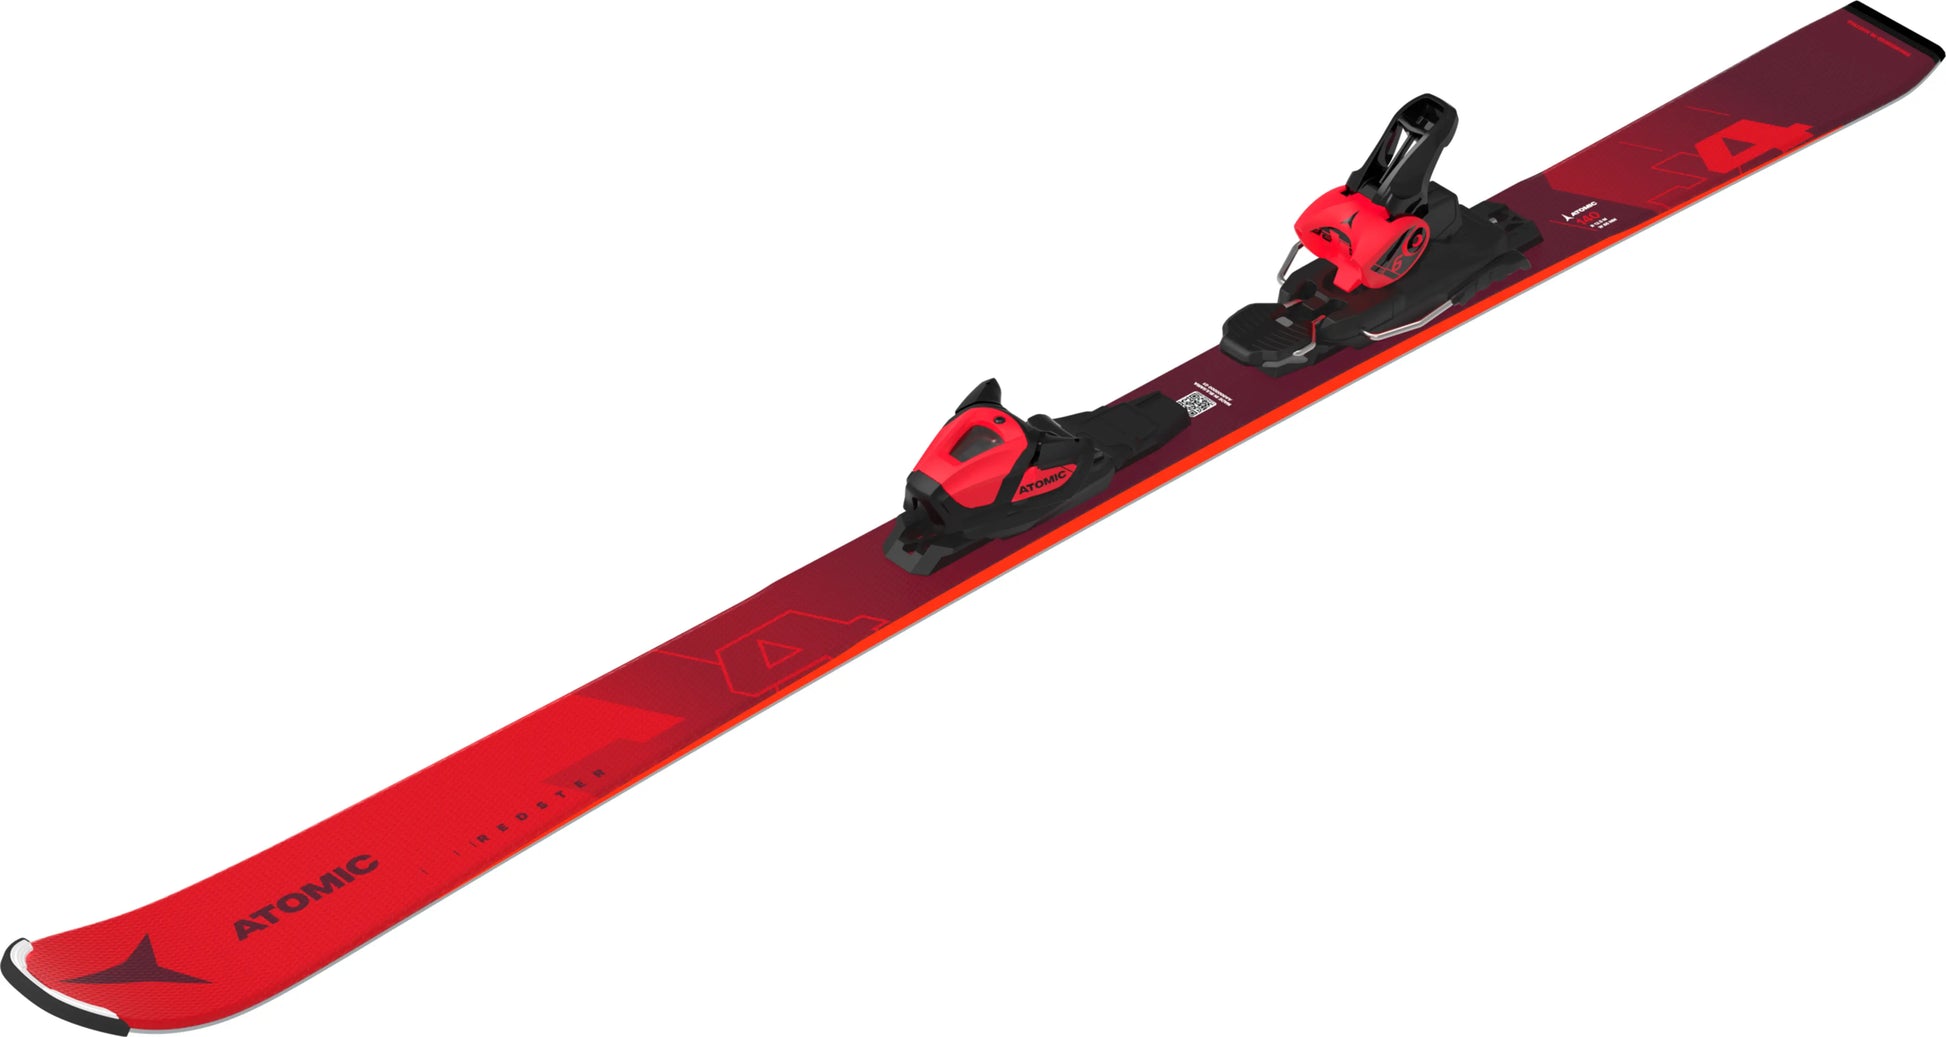 ウィンタースポーツジュニア用スキー ATOMIC REDSTER J4 140cm